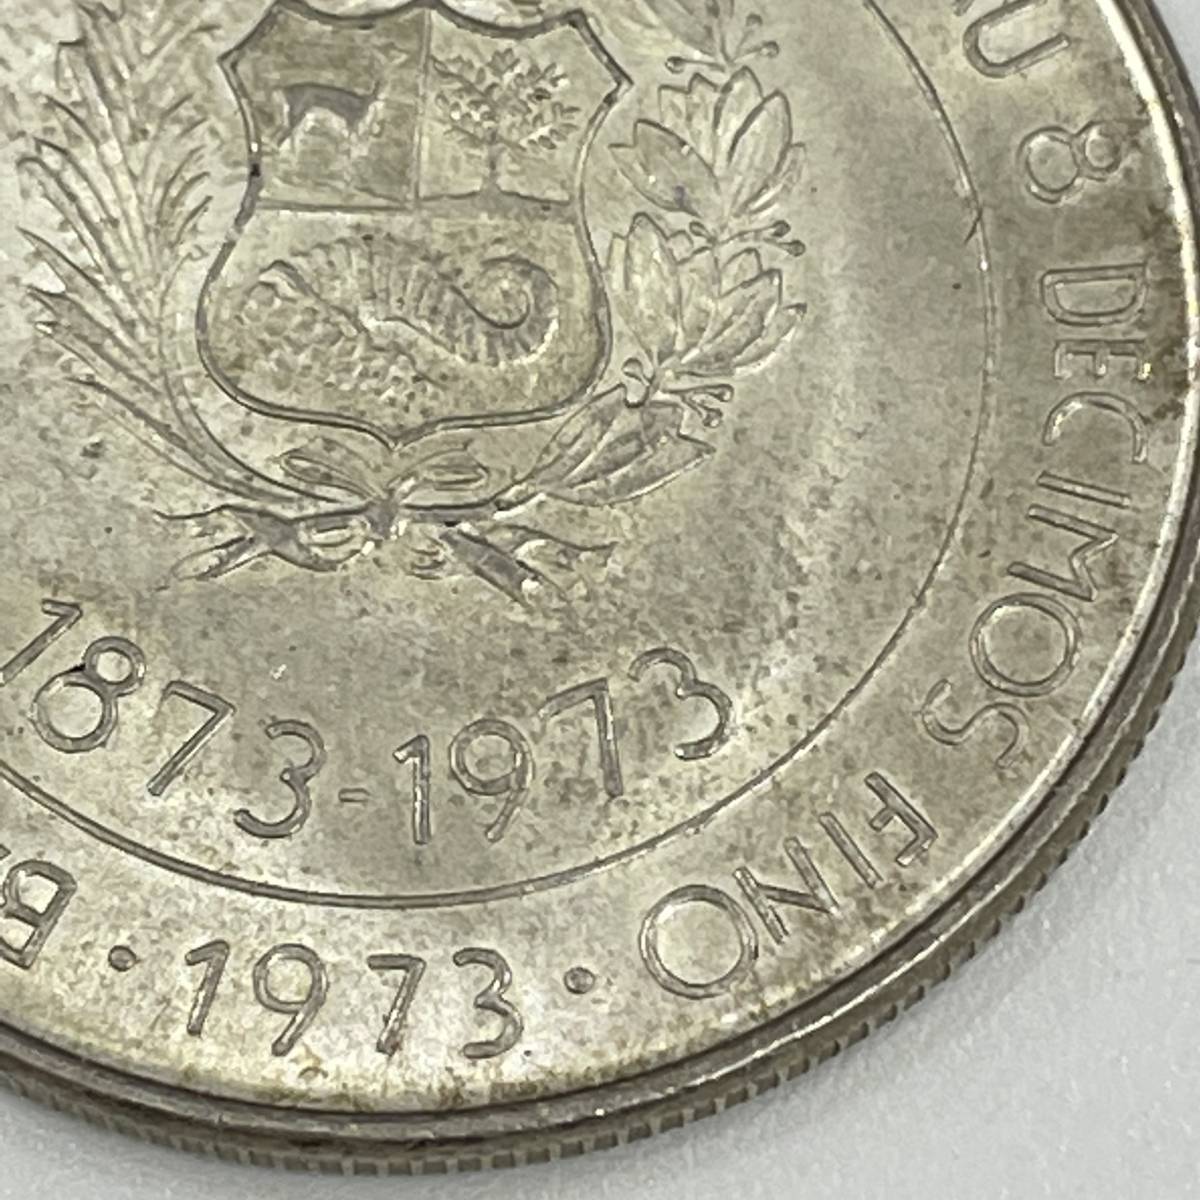 #5163 ペルー修好100周年記念 100ソル 銀貨 100 soles de oro 1873年-1973年 古銭 外国銭 コイン コレクション 現状品の画像8